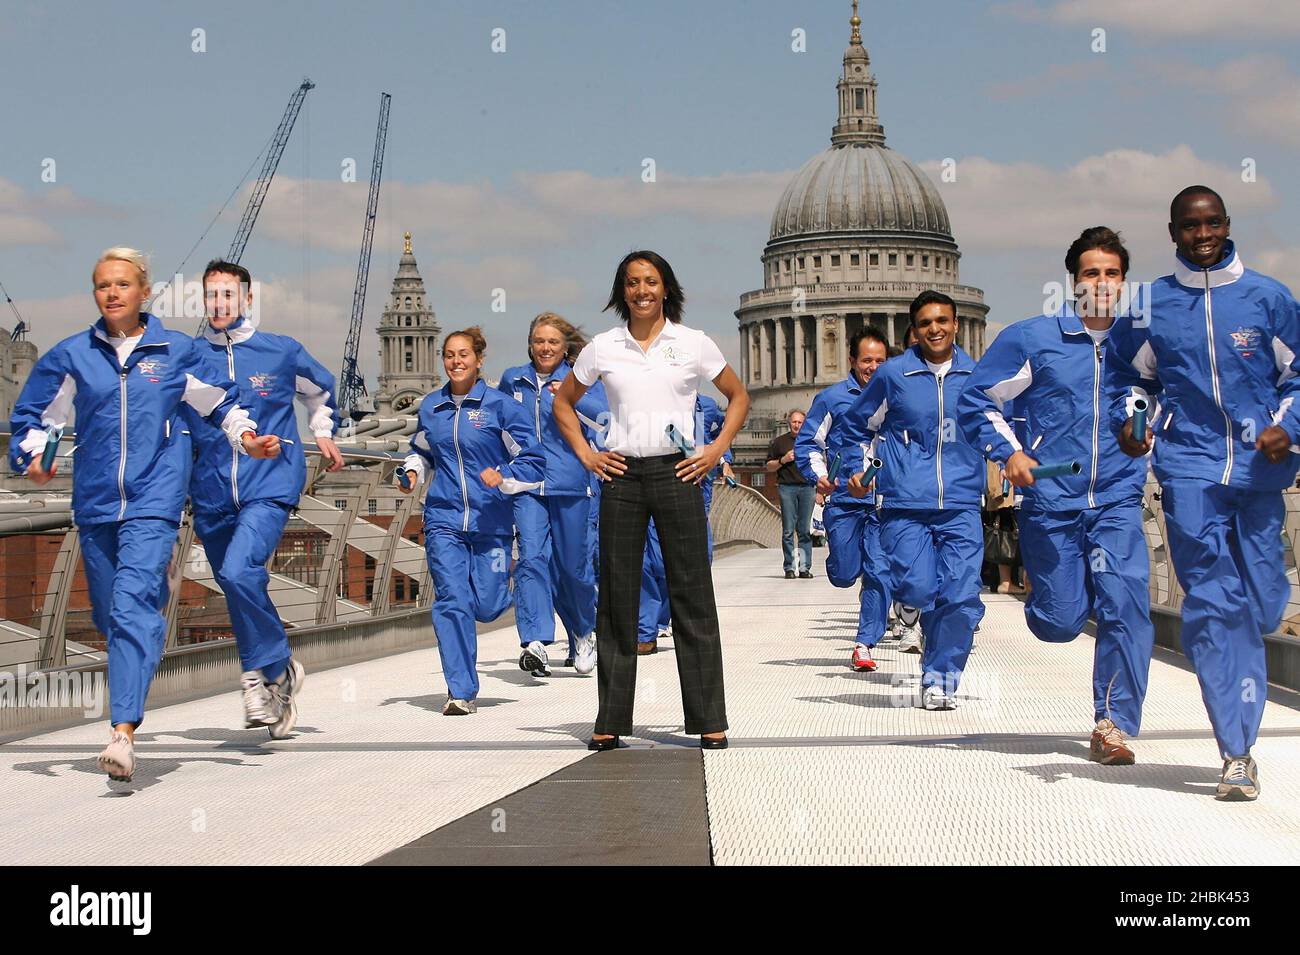 Kelly Holmes participa con un equipo internacional de veinte atletas seleccionados para la Blue Planet Run 2007, un primer relevo alrededor del mundo en el Tate Modern en Londres el 18th de abril de 2007. Foto de stock